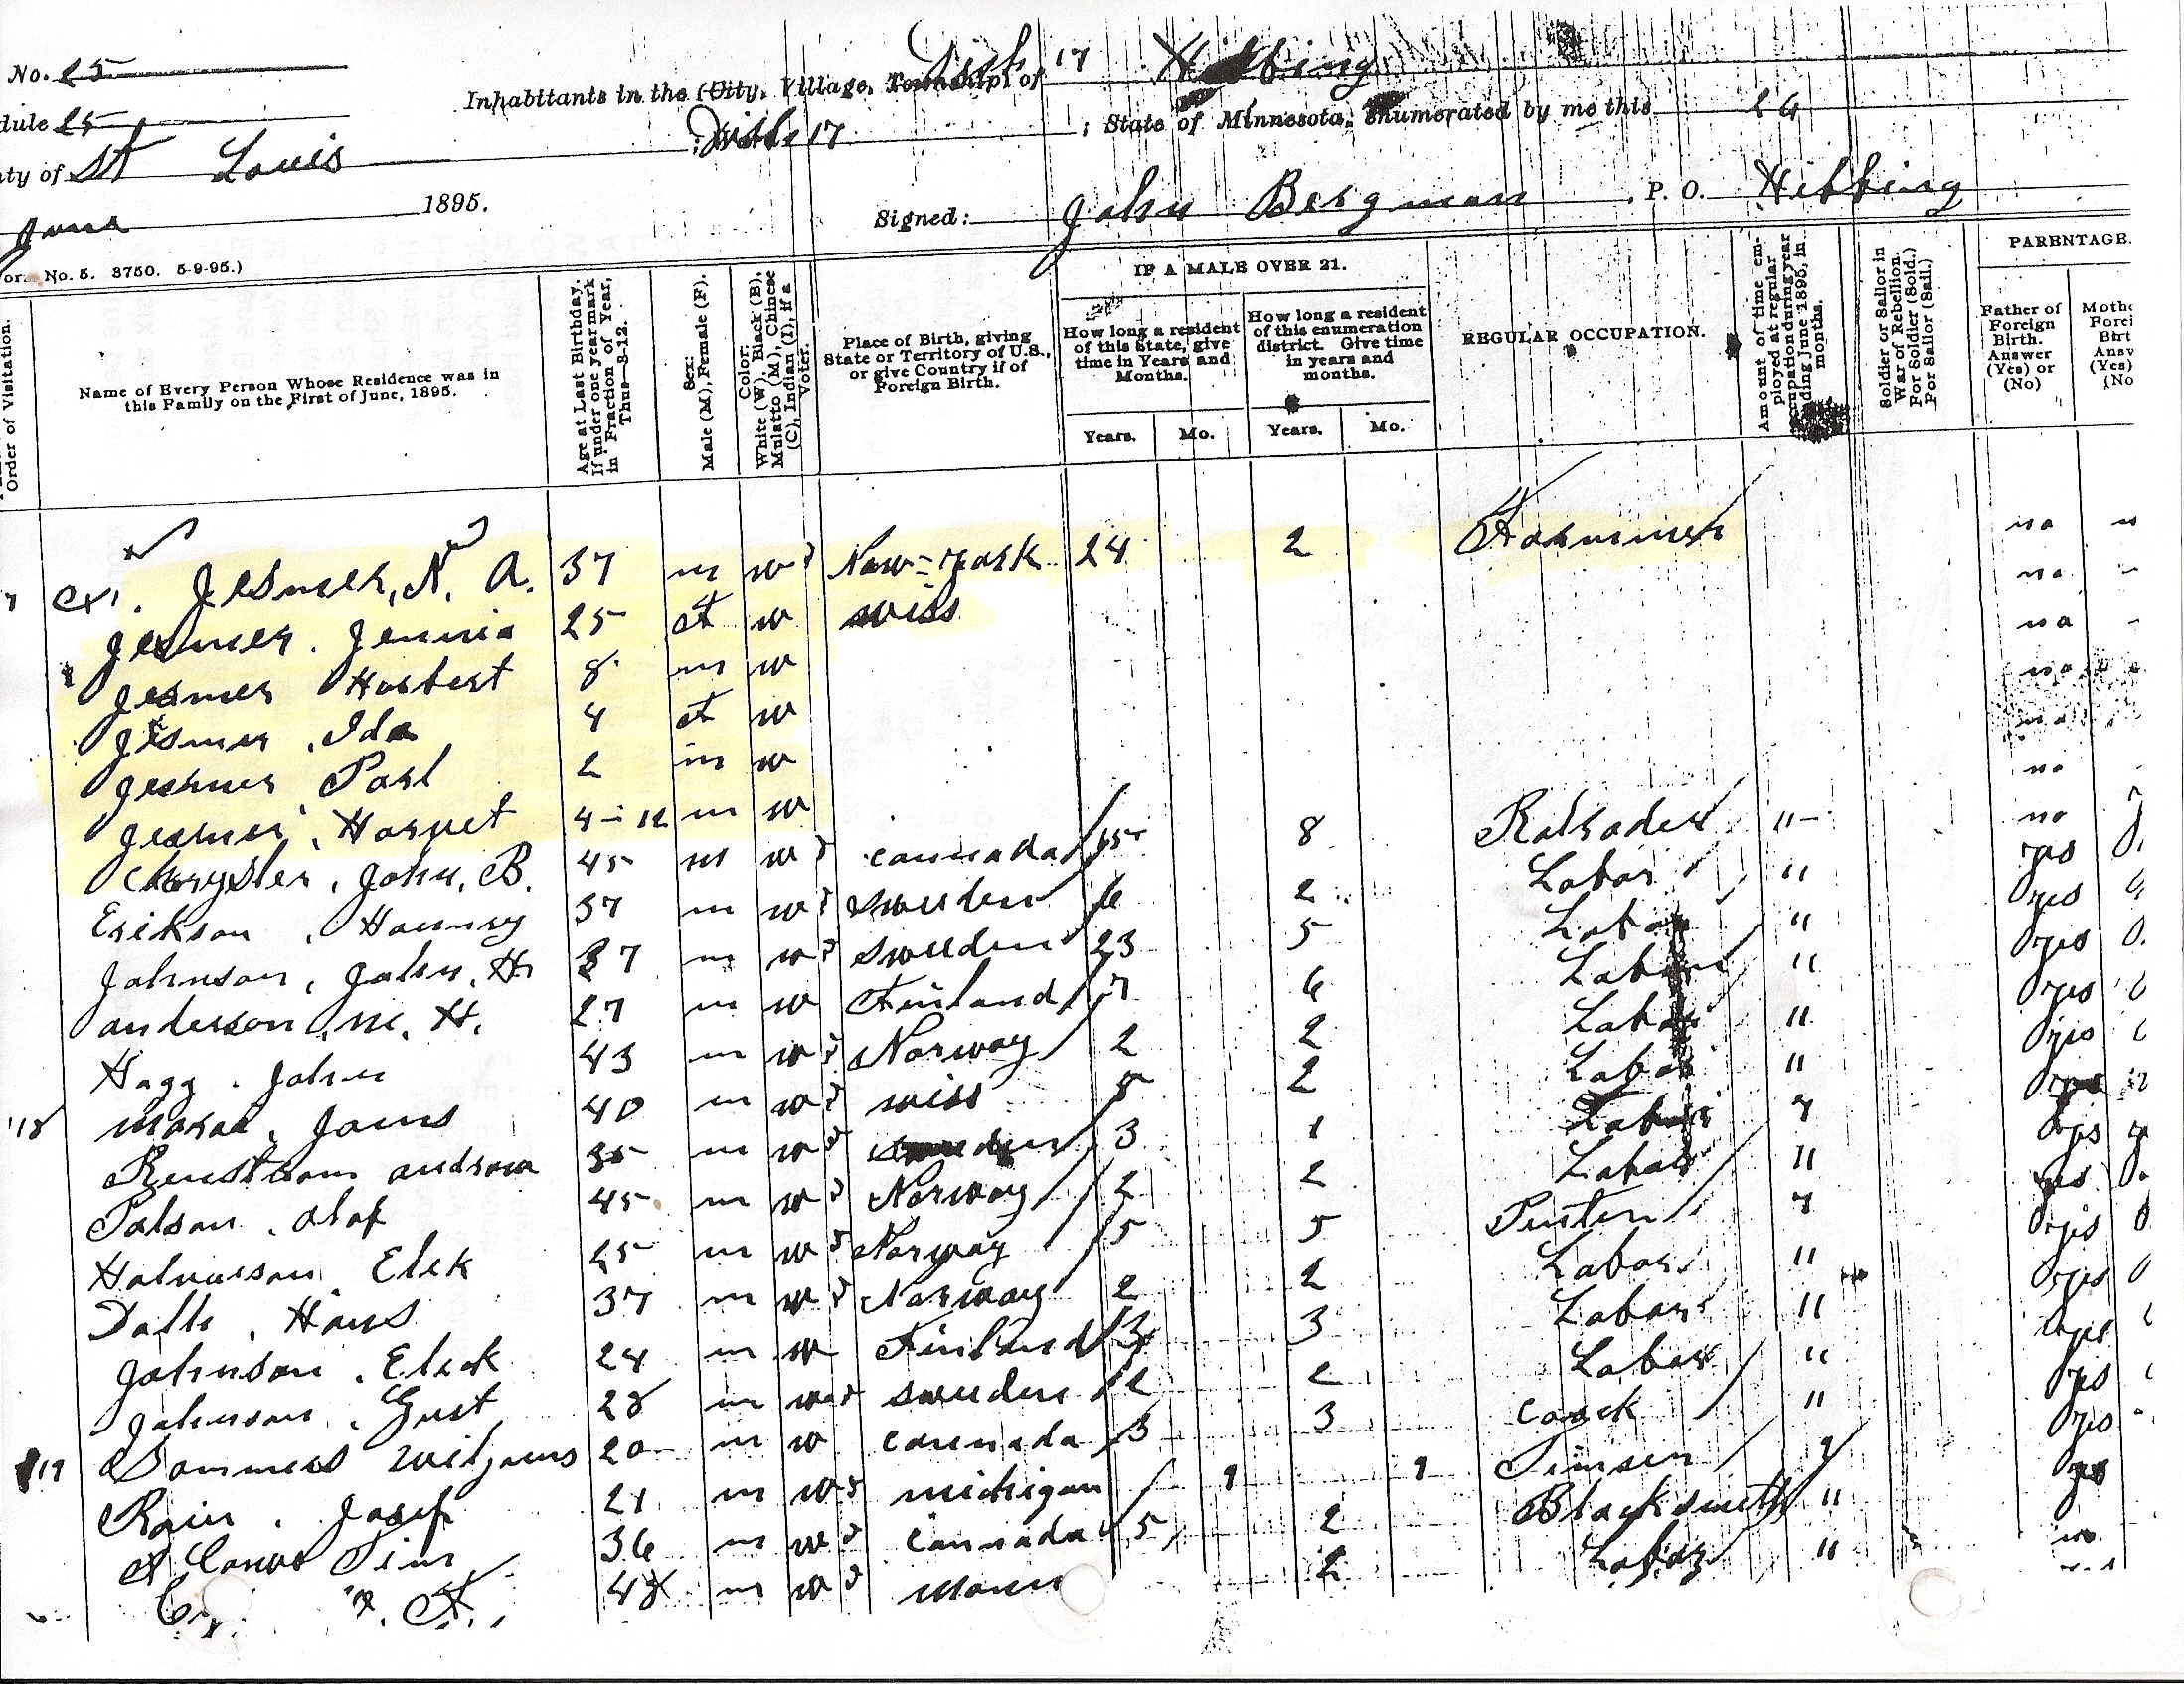 1895 census